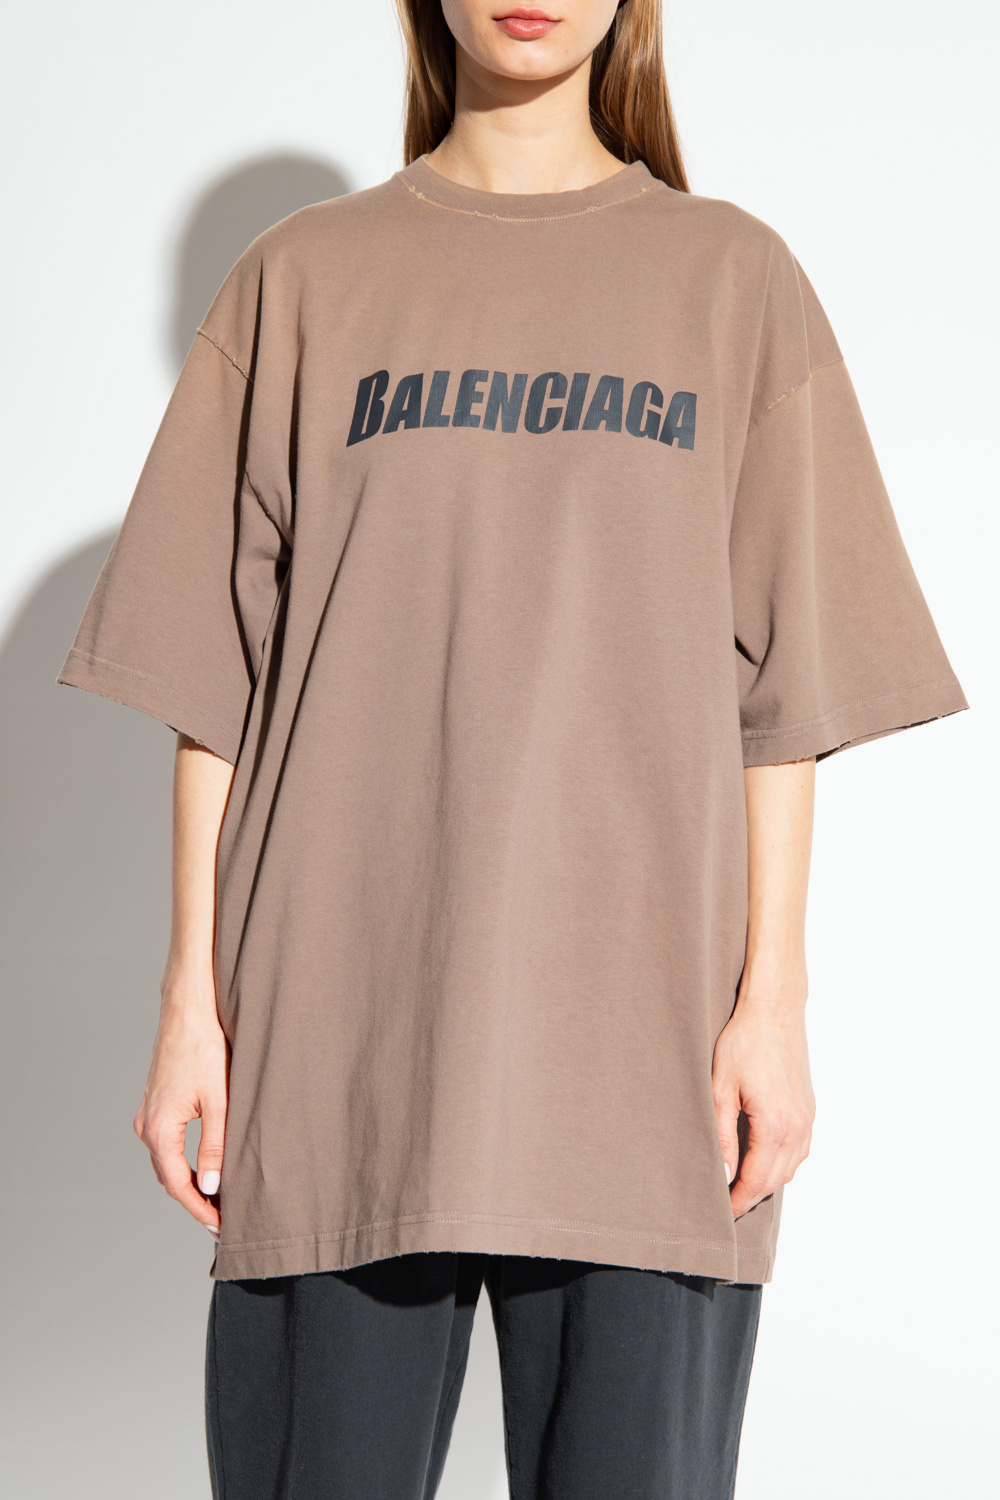 Balenciaga sweatshirt polka with logo a cold wallpullover black